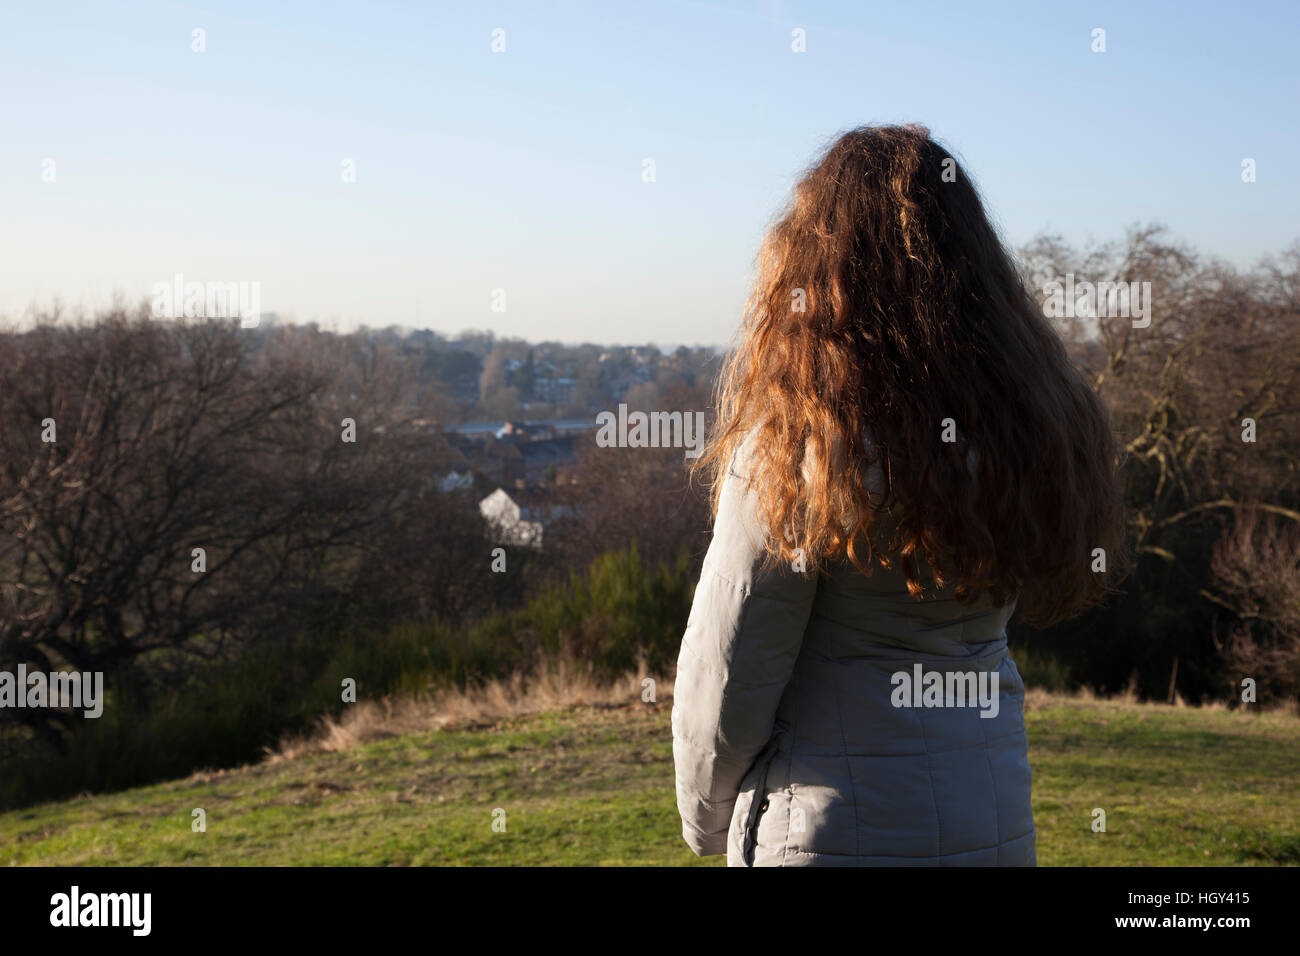 Vista posterior de una mujer sola en una ubicación tranquila, mirando a la distancia Foto de stock